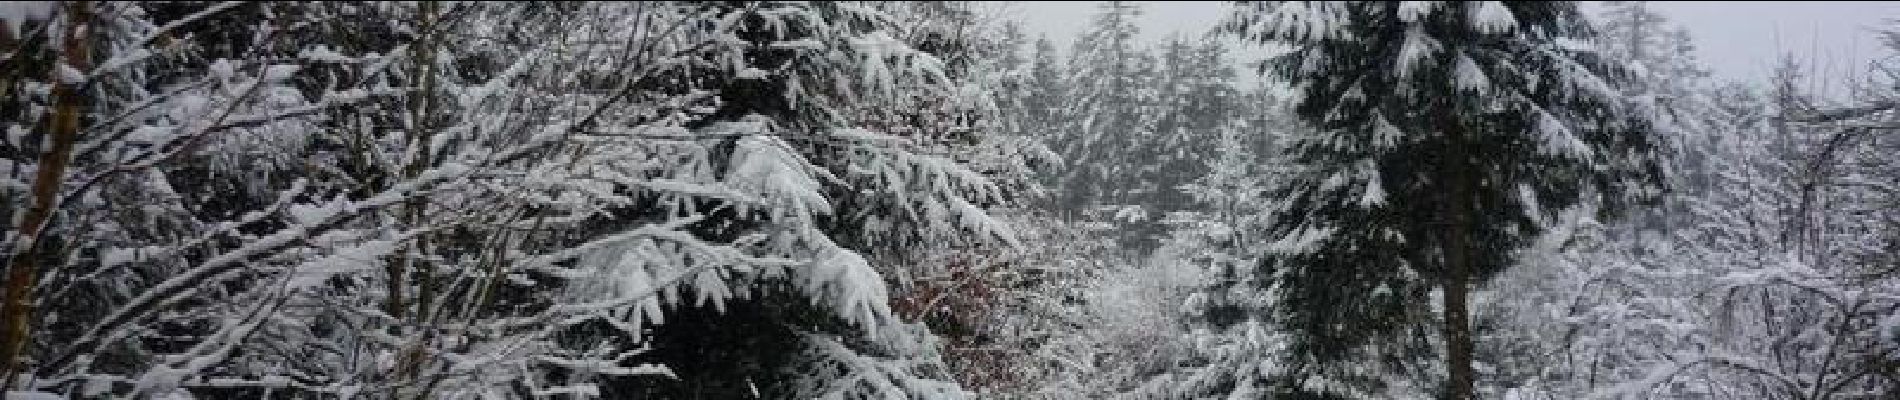 Trail Snowshoes Wisembach - Crêtes des Vosges en hiver - De Sainte Marie aux Mines au col du Calvaire - Photo